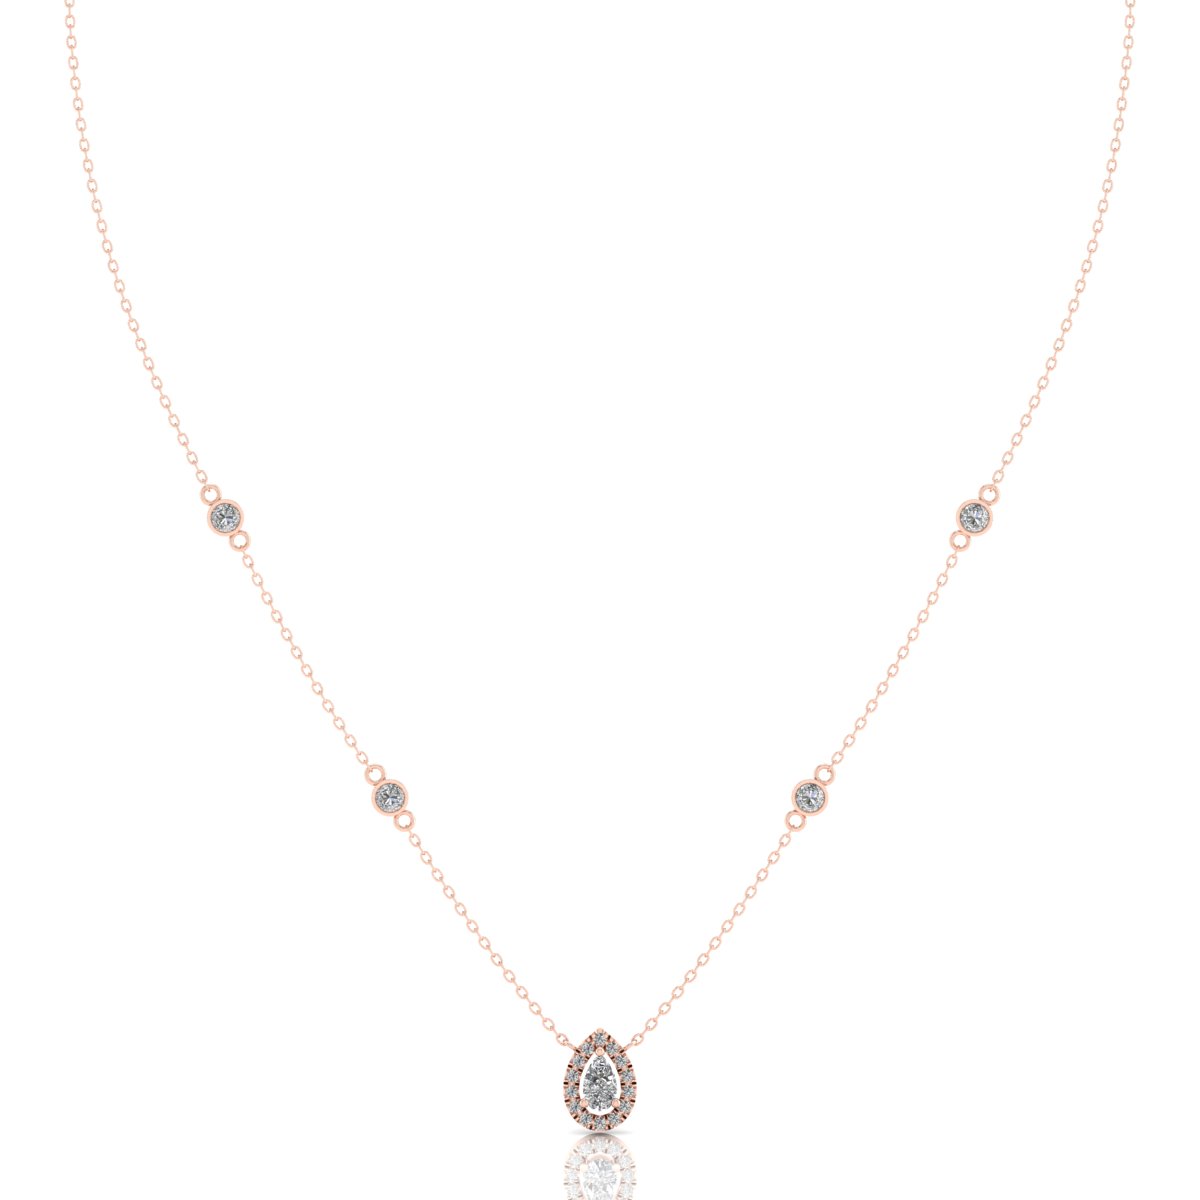 IGI Certified Diamond Pear Cut Necklace